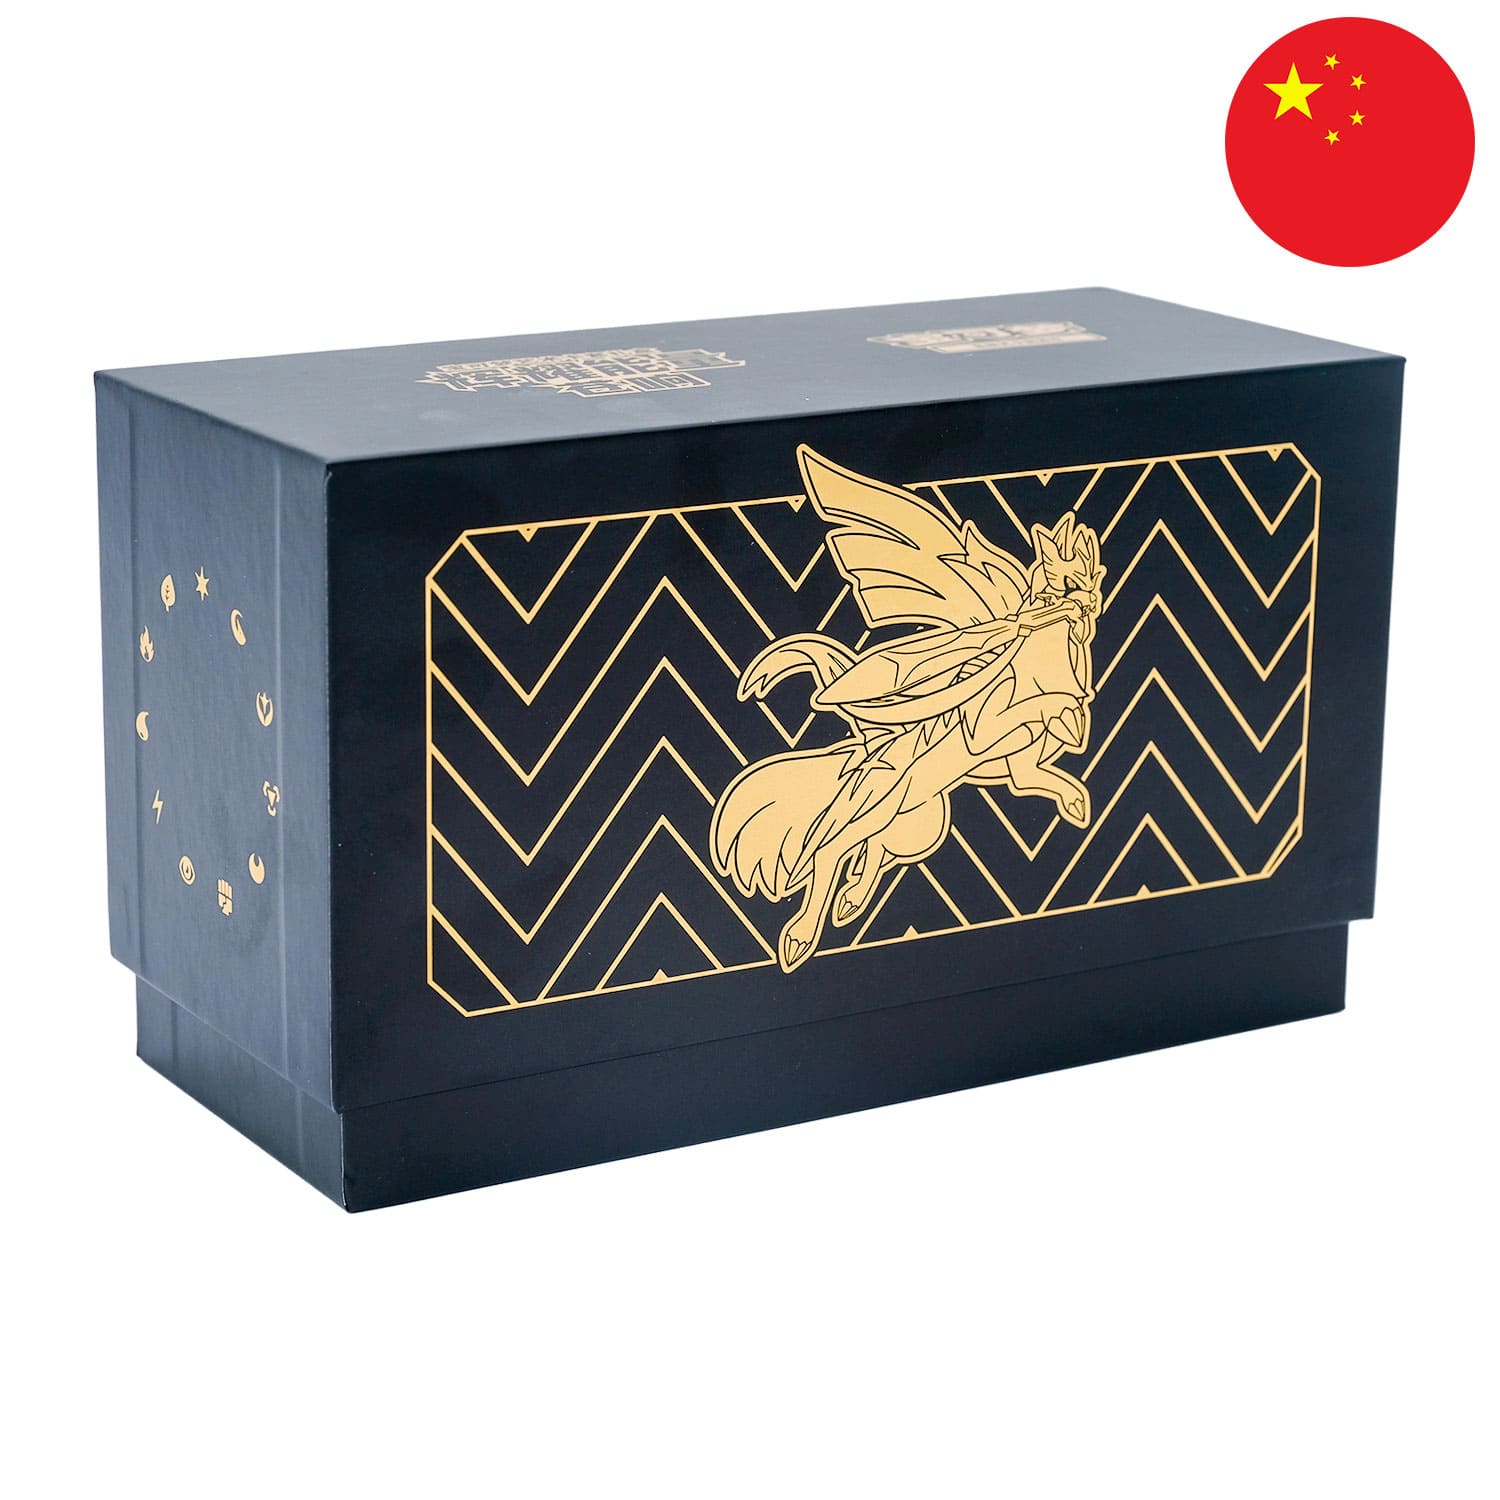 Die Pokemon Radiant Energy Box Zacian (CSK3), frontal&schräg als Hauptbild, mit der Flagge Chinas in der Ecke.